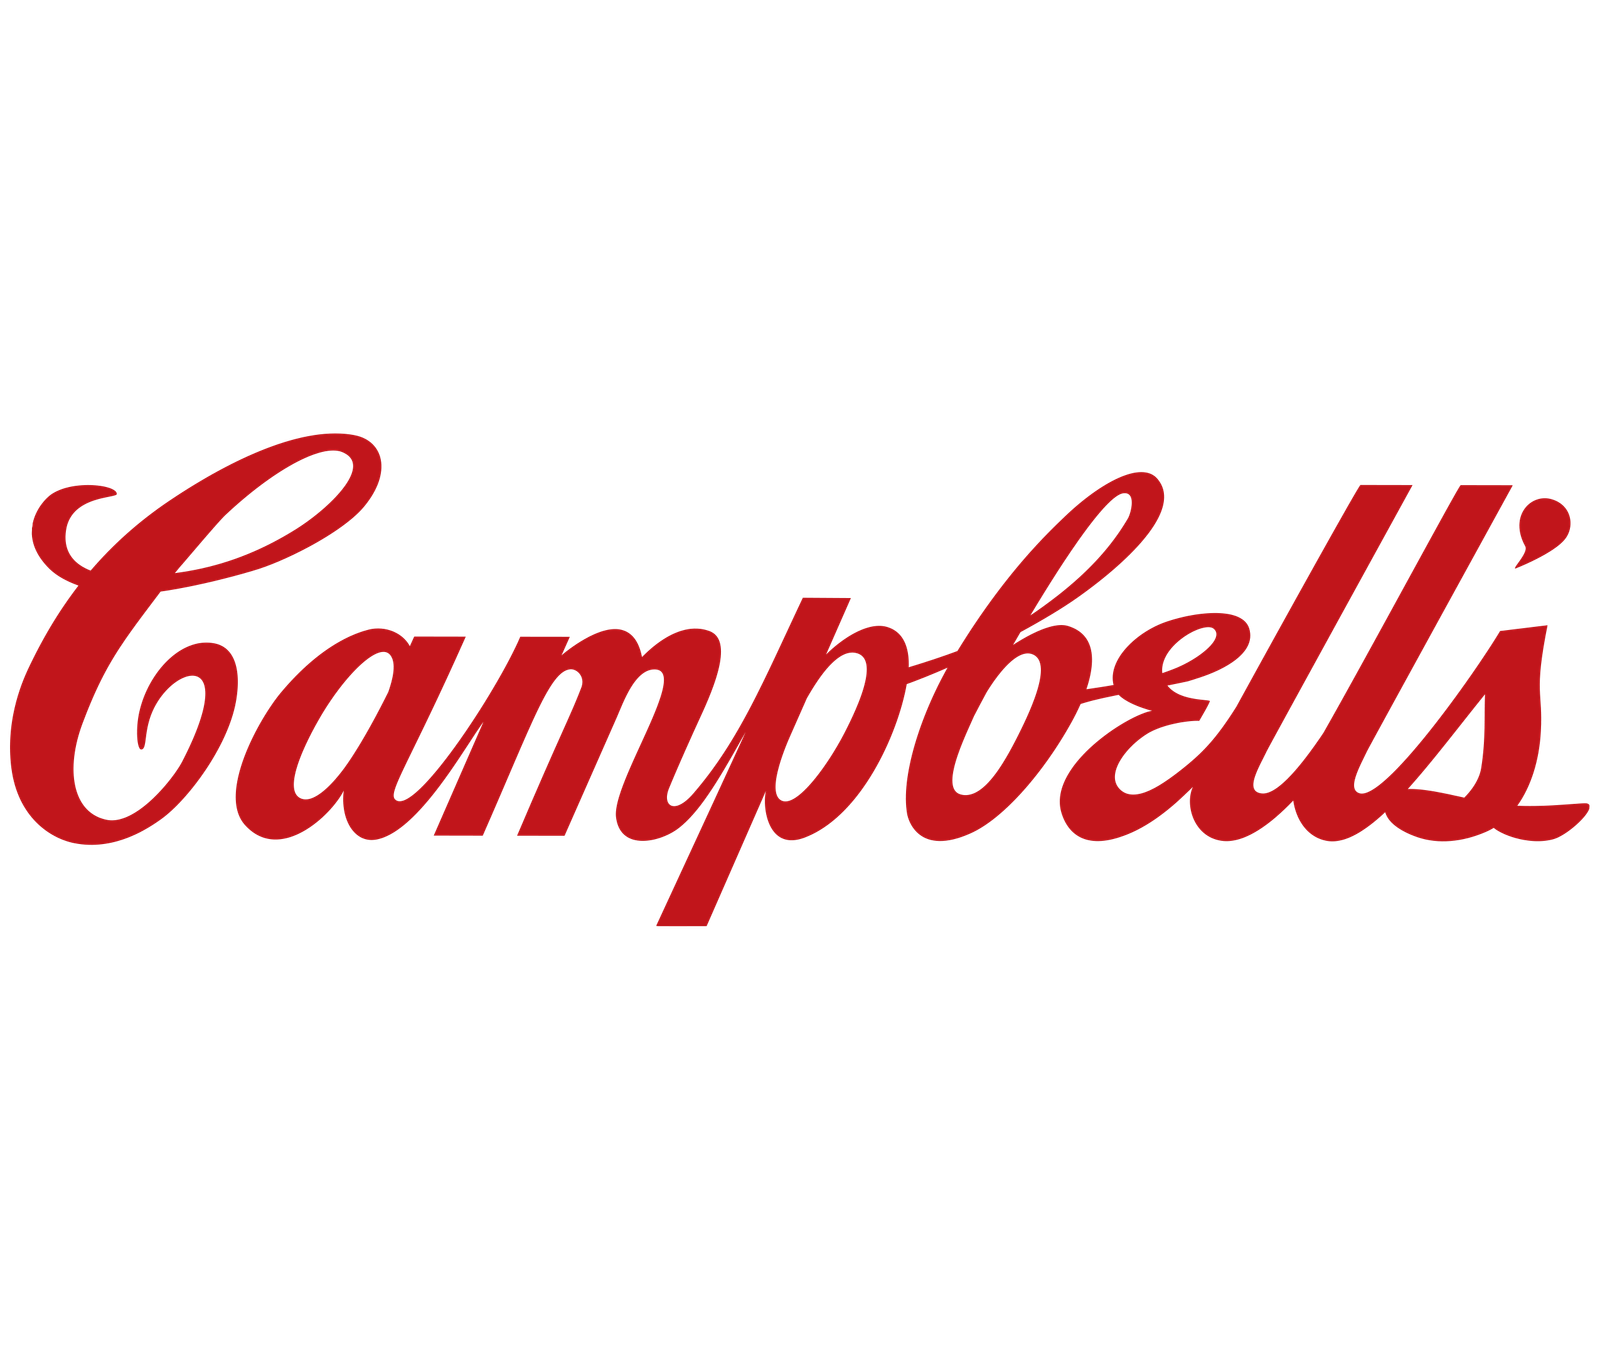 Campbell's company logo.